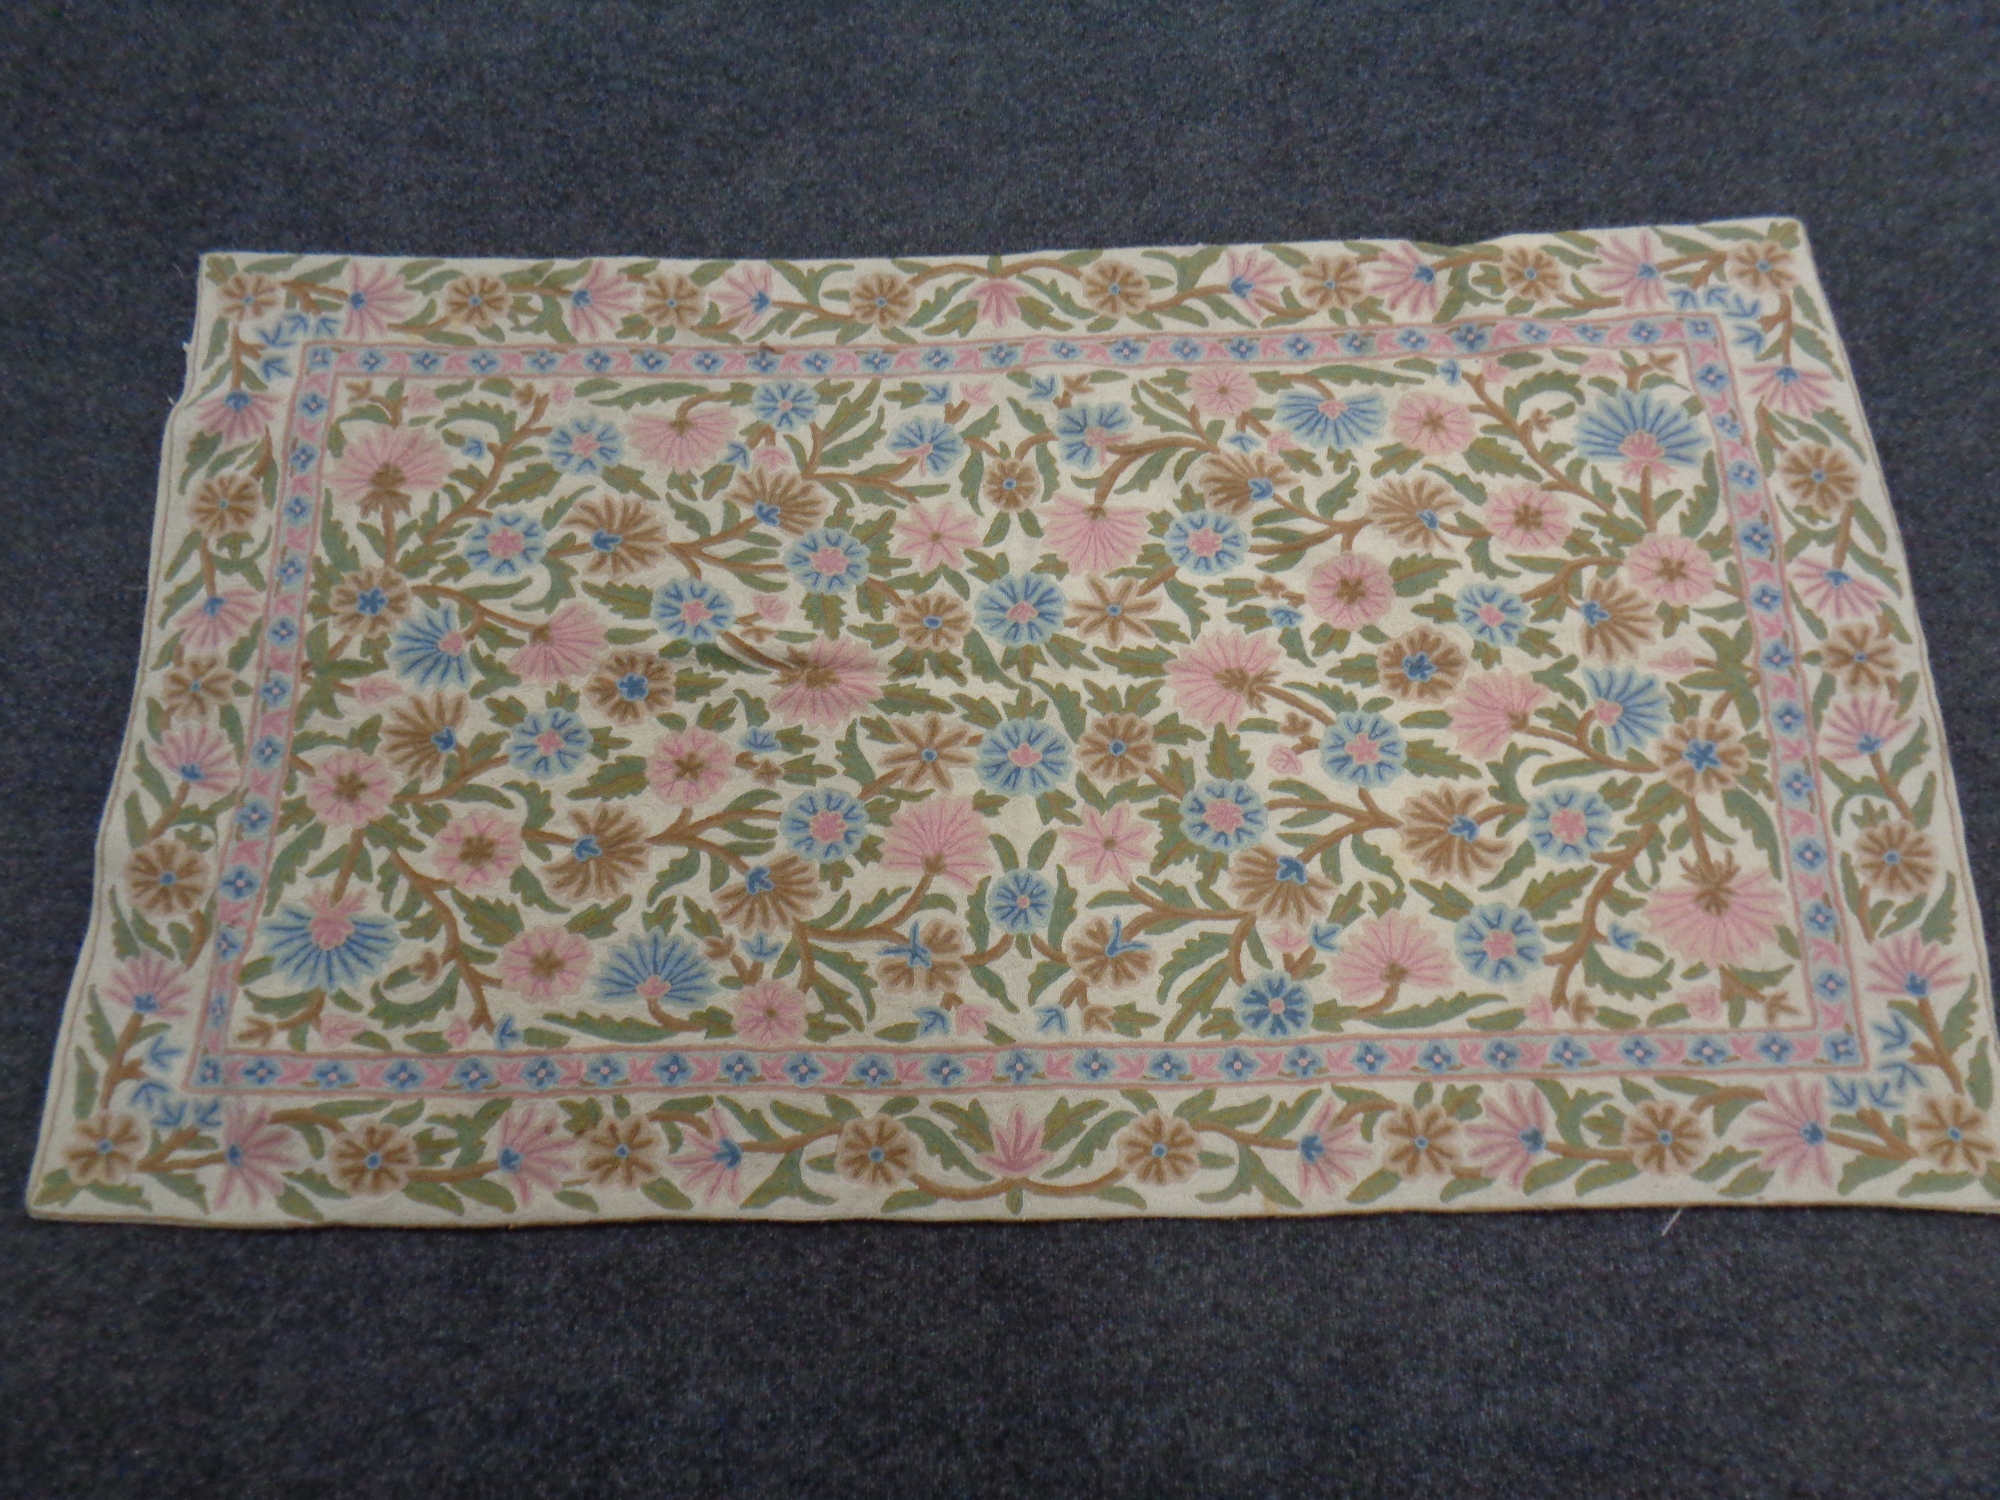 A Kashmiri chain stitch rug 155cm by 87cm